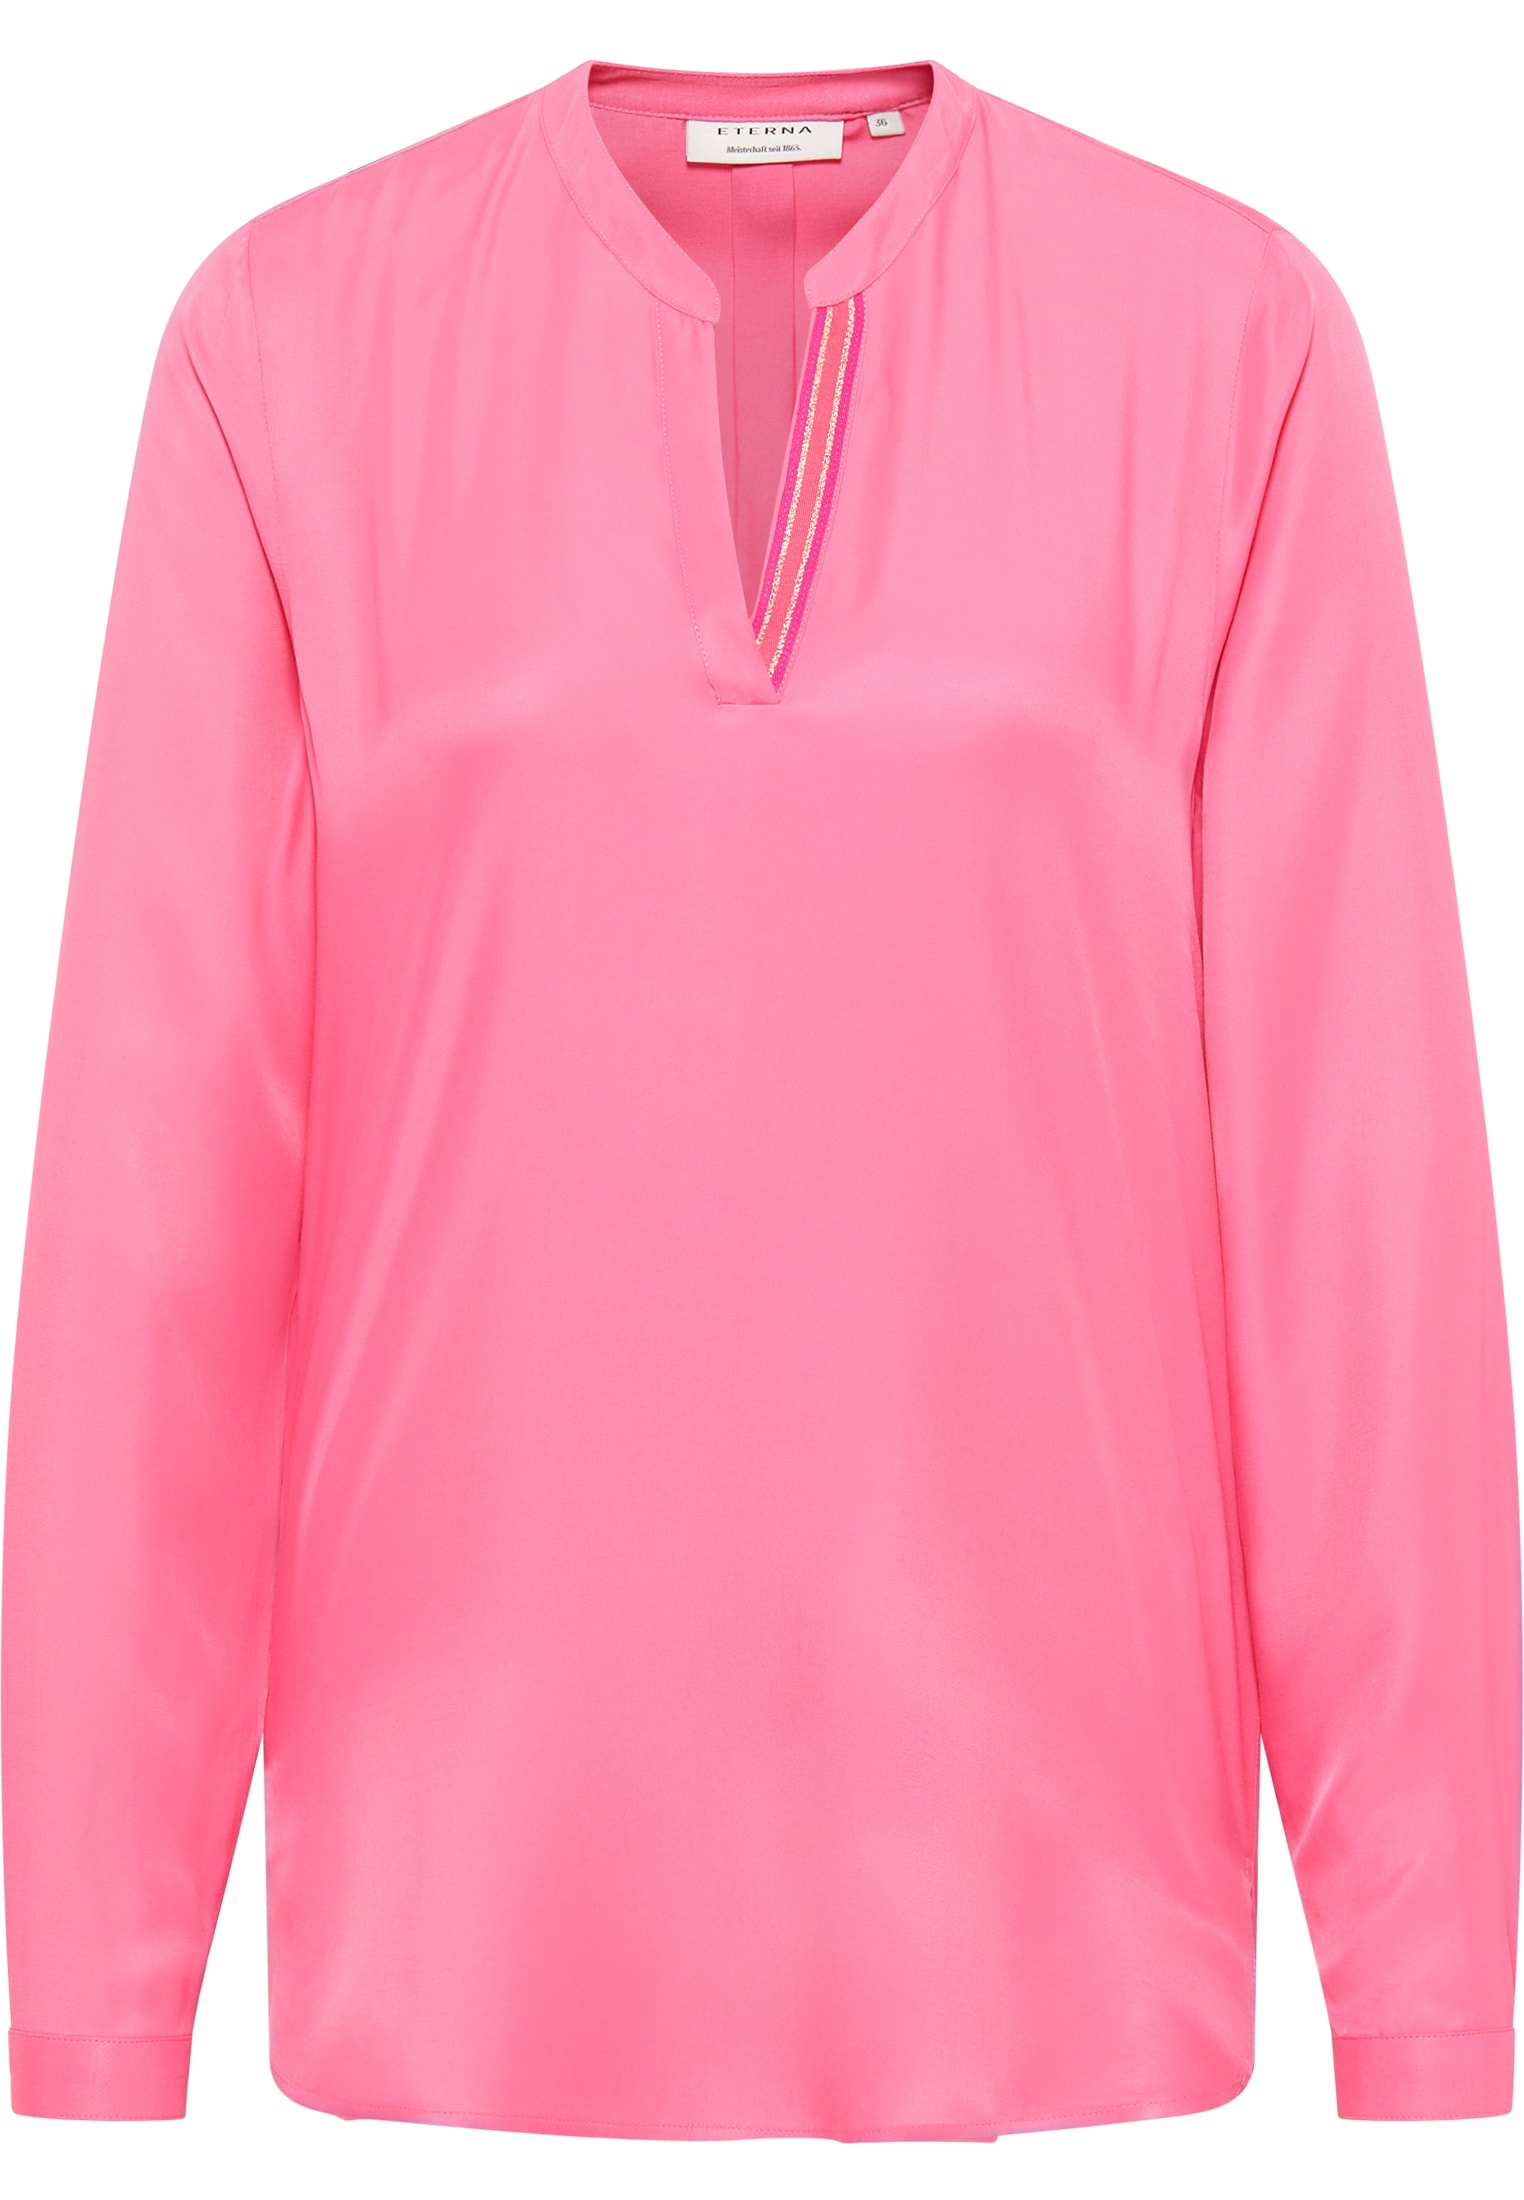 Viscose Shirt Bluse in pink Langarm 2BL04272-15-21-36-1/1 unifarben | pink | 36 | 